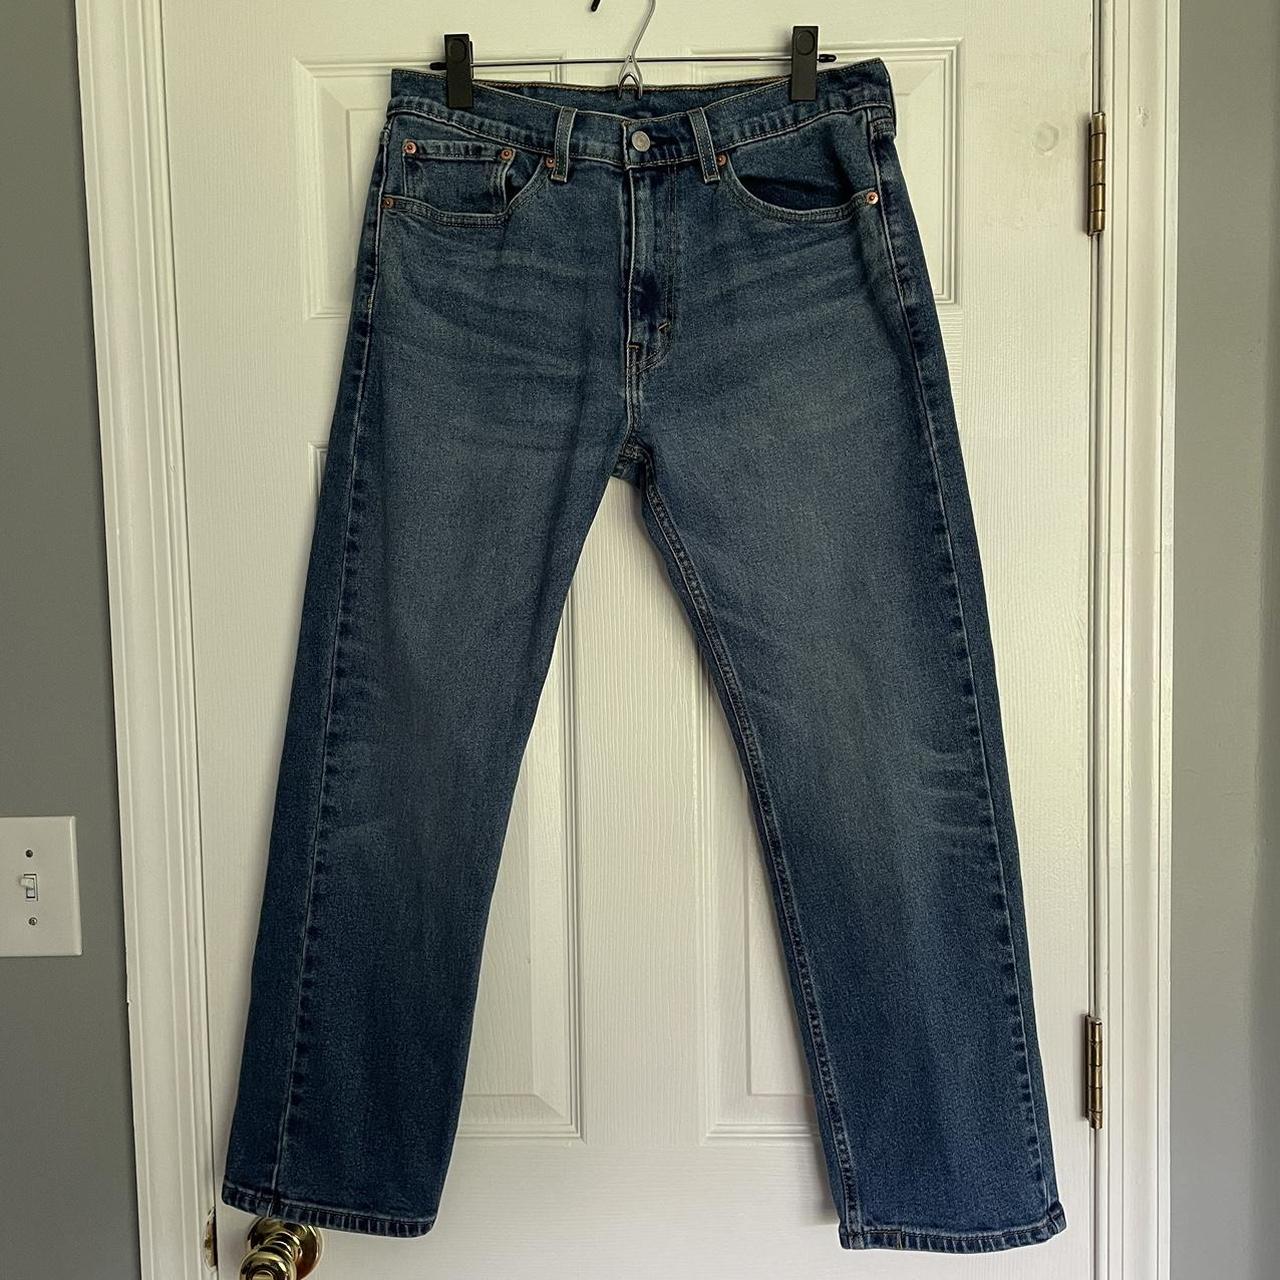 Bortset Settle grundlæggende Levi's 505 jeans Originally Mens 32x29, adjusted to... - Depop